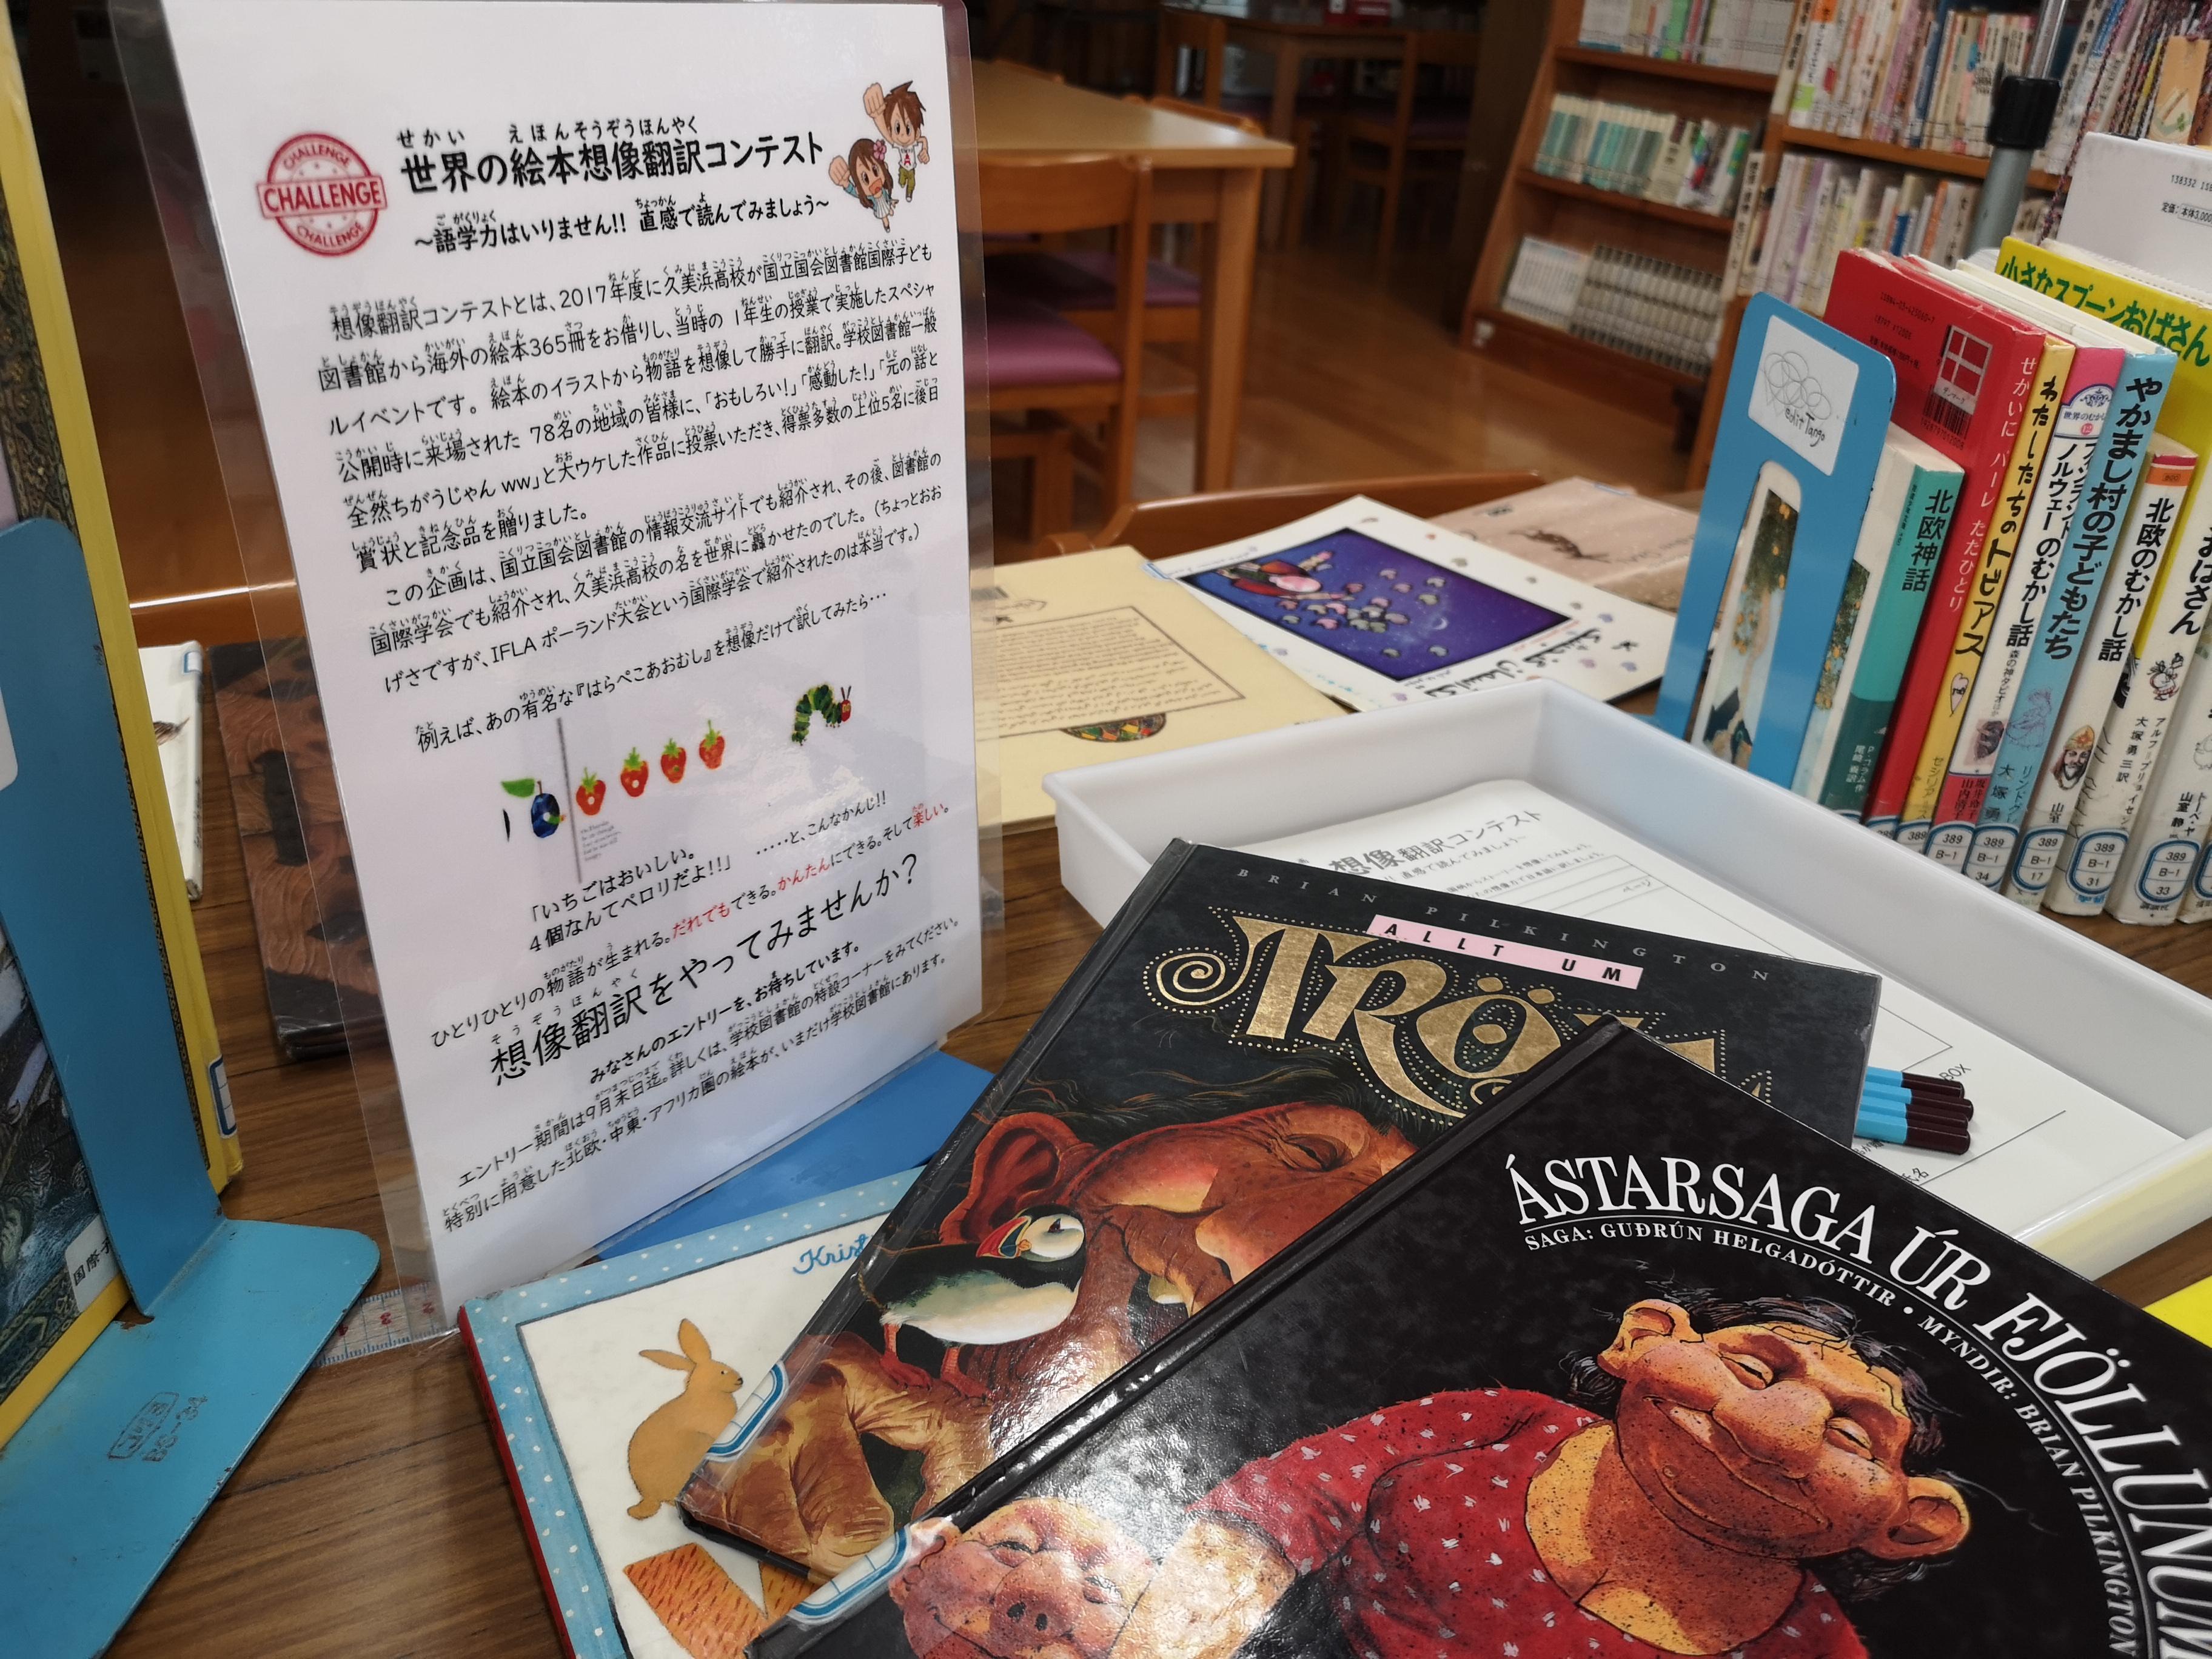 http://www.kyoto-be.ne.jp/tangoryokufuu-hs/mt/library-k/images/IMG_20210906_103007.jpg